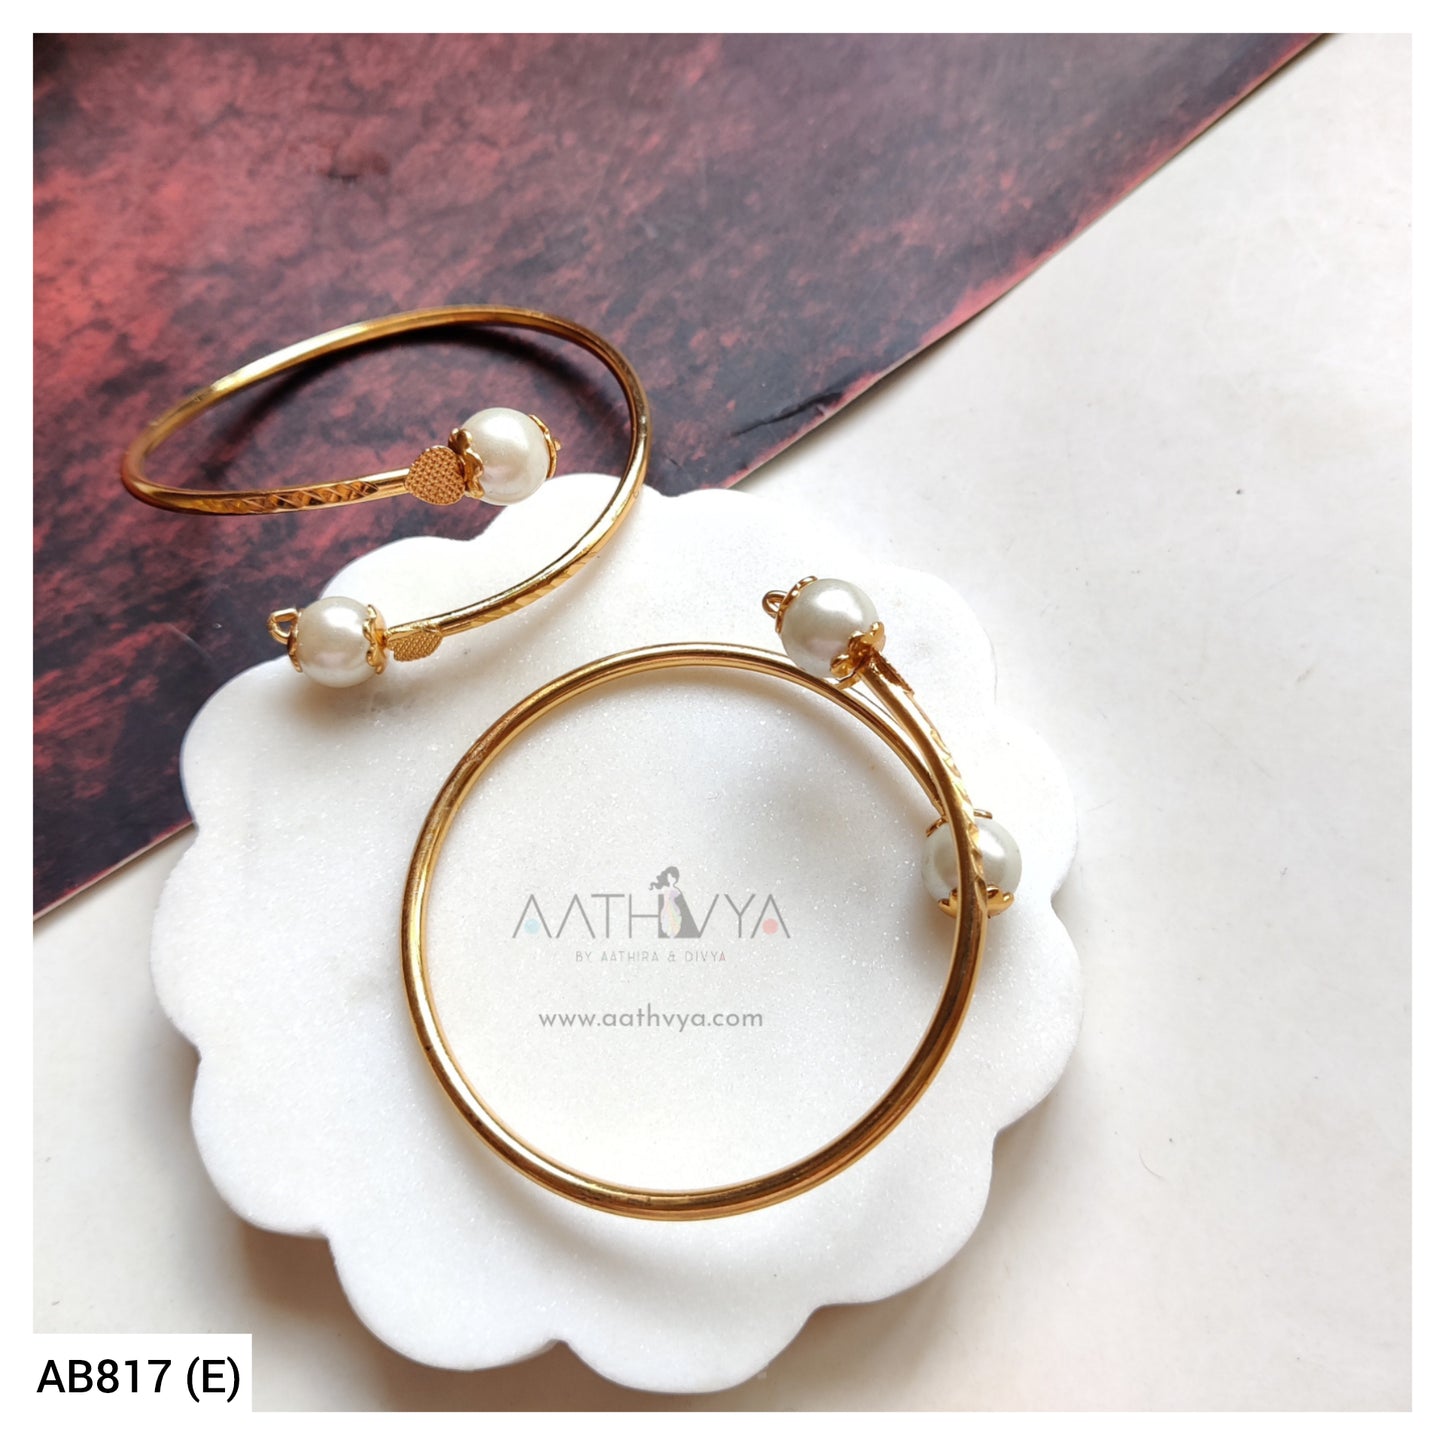 Pearl Adjustable Bracelet - AB817 (E)